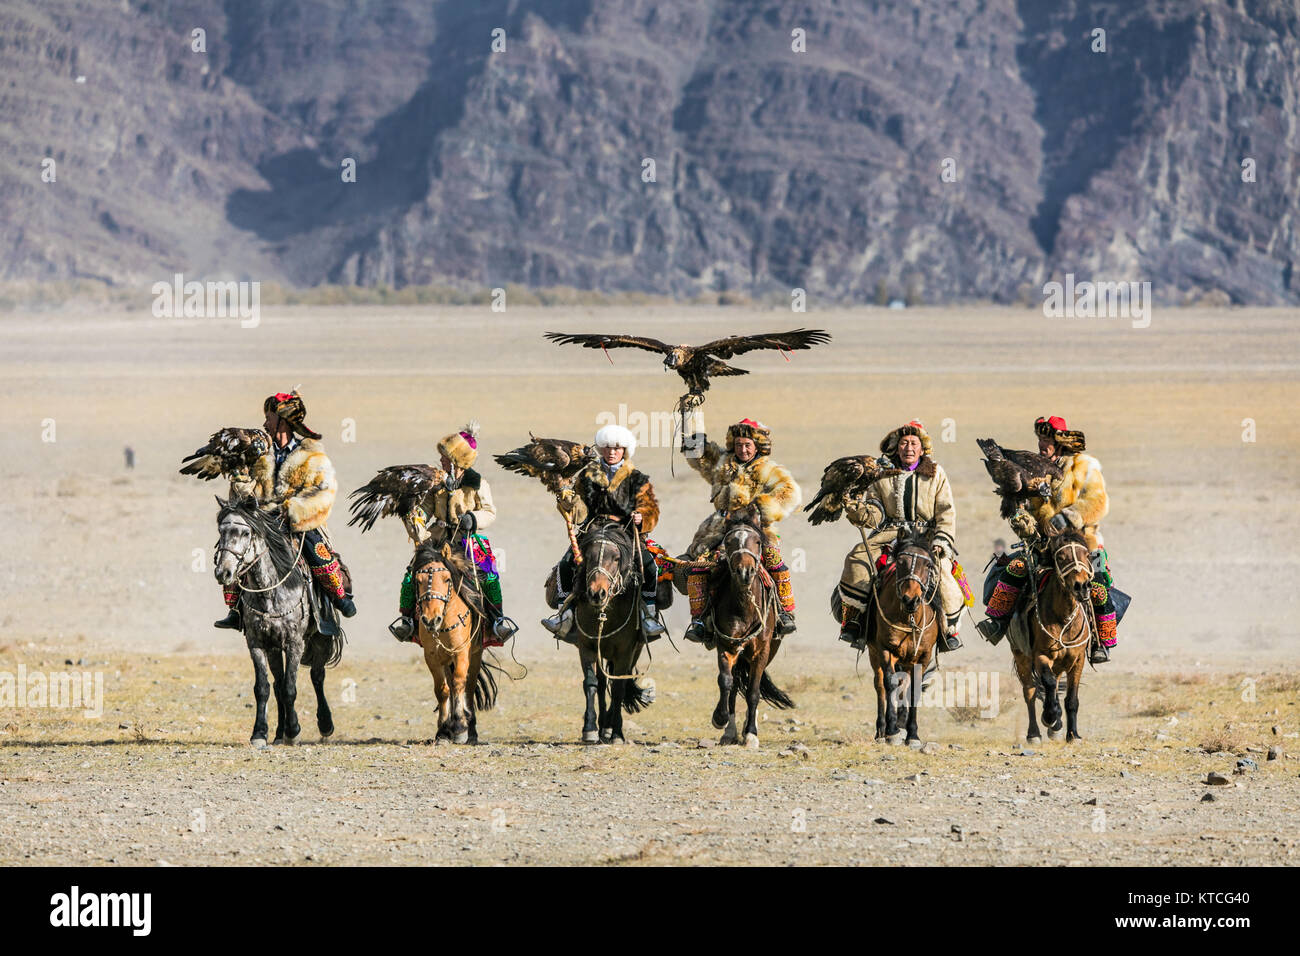 Eagle kazajo cazadores llegan a caballo al Festival Golden Eagle en Mongolia Foto de stock